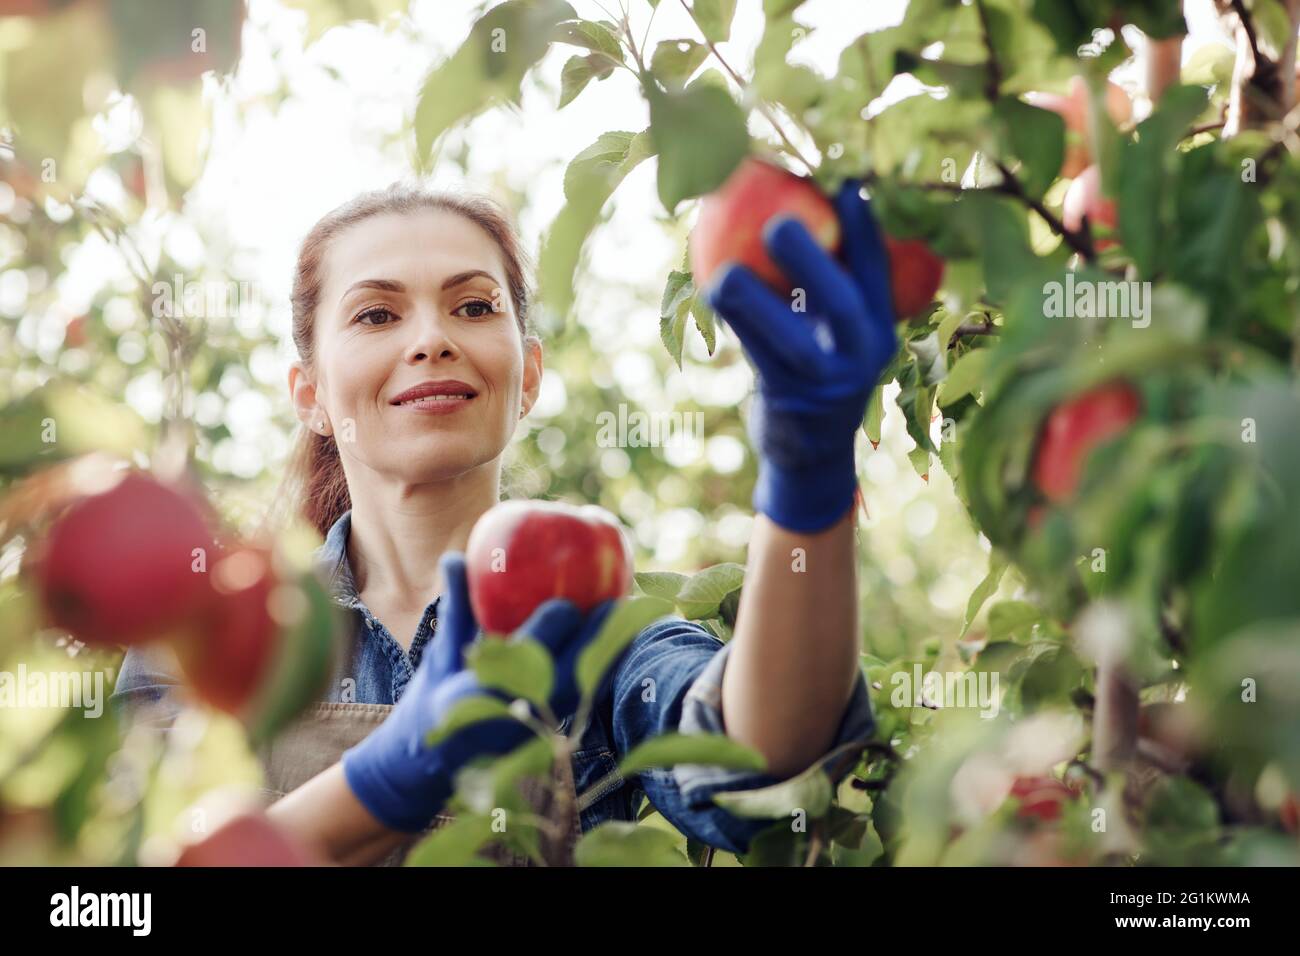 Fröhliche junge attraktive Dame Bauer in Handschuhen pflückt rote Bio-Äpfel aus Baum mit grünen Blättern Stockfoto